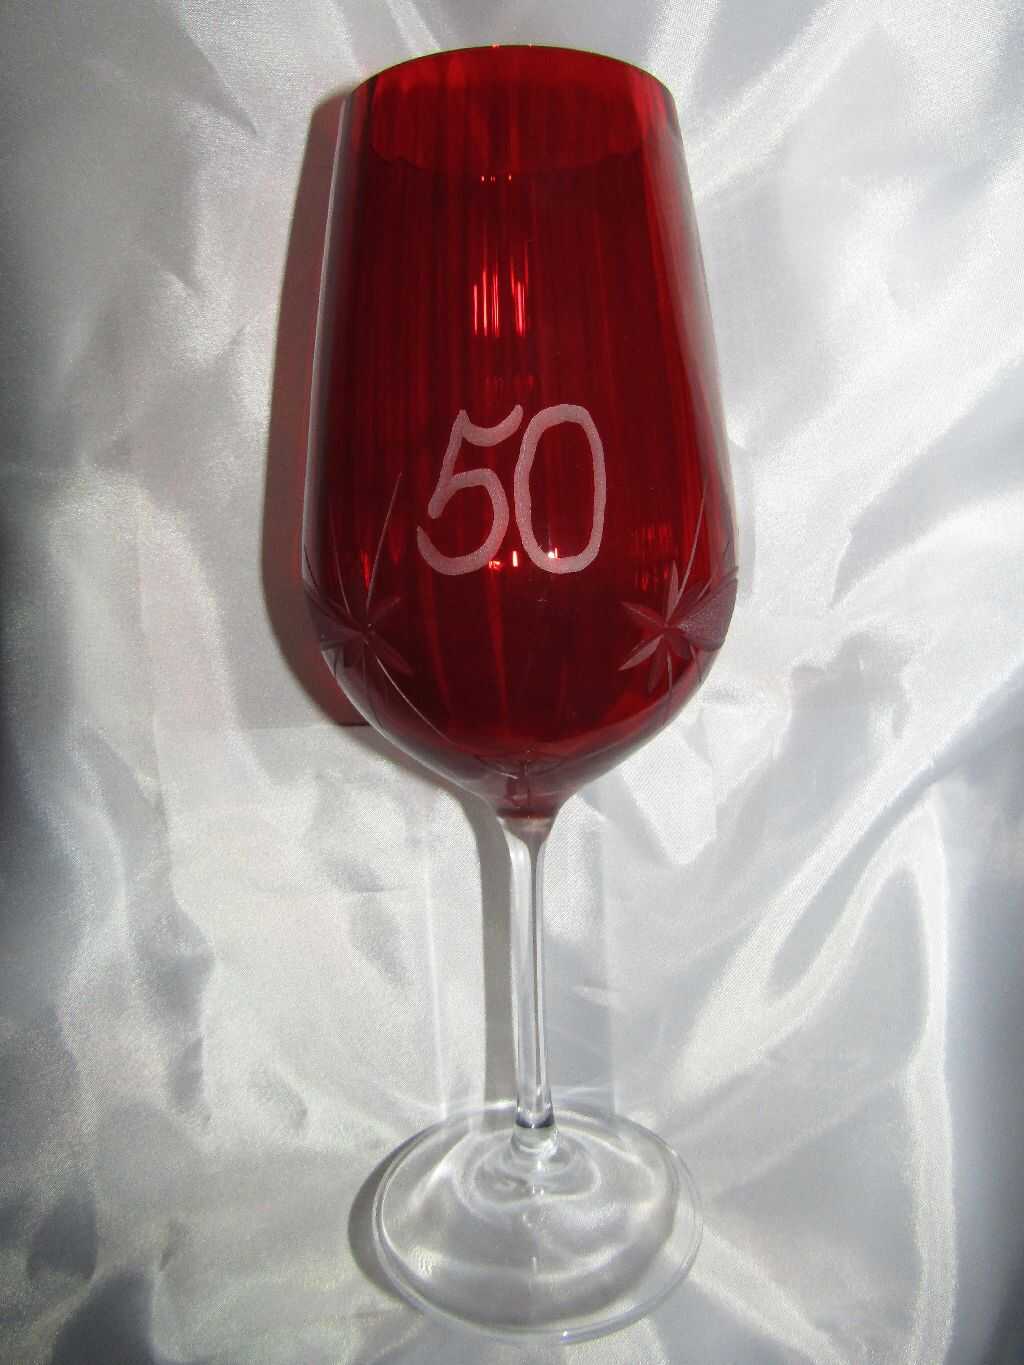 LsG-Crystal Jubilejní sklenice červená číše výroční broušená Kanta J-329 600 ml 1 Ks.